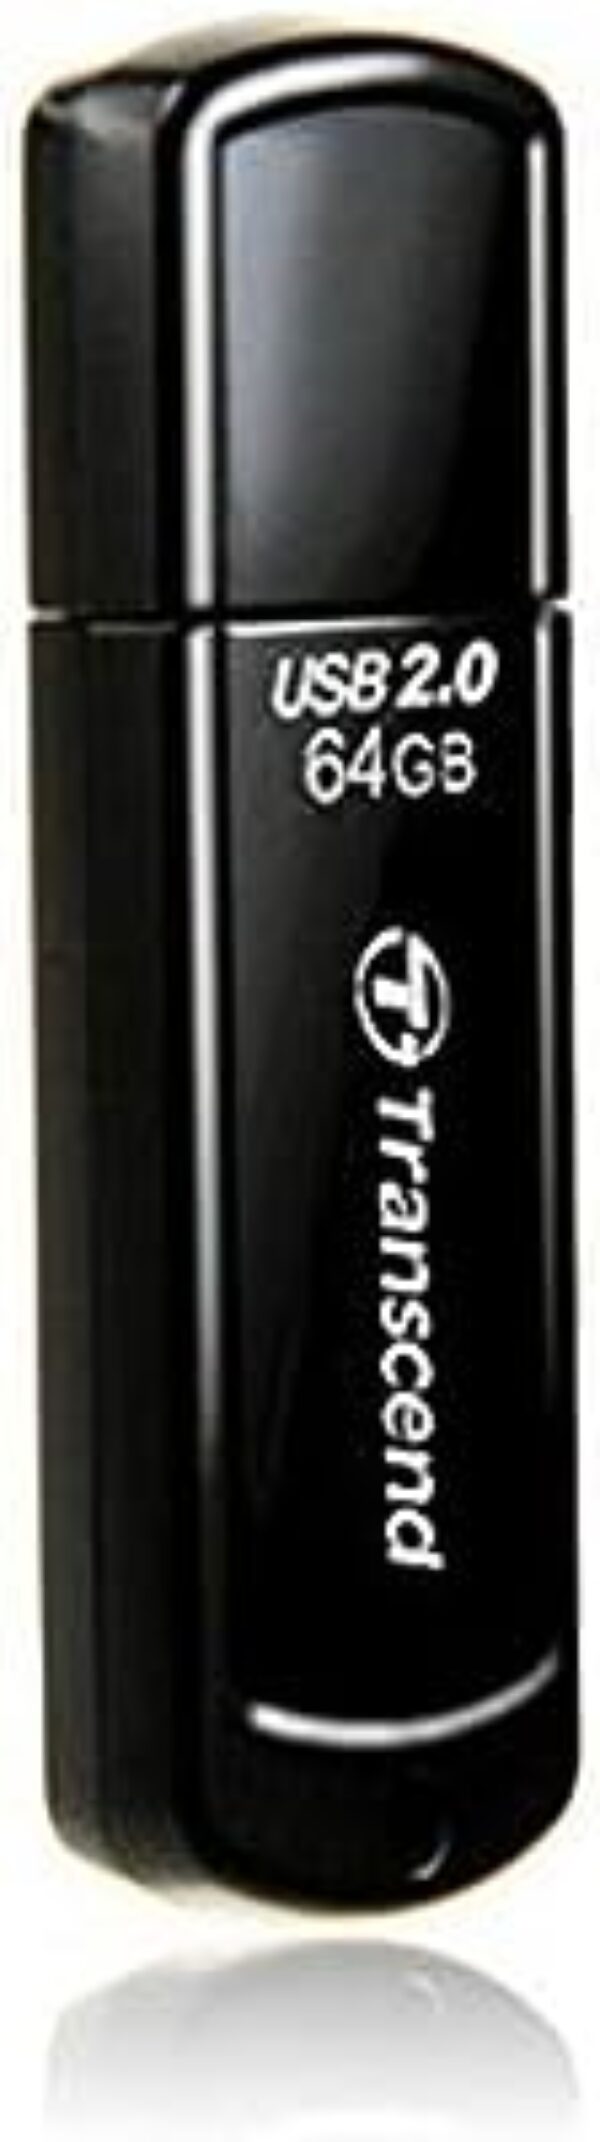 Transcend JetFlash 350 64GB USB Pen Drive